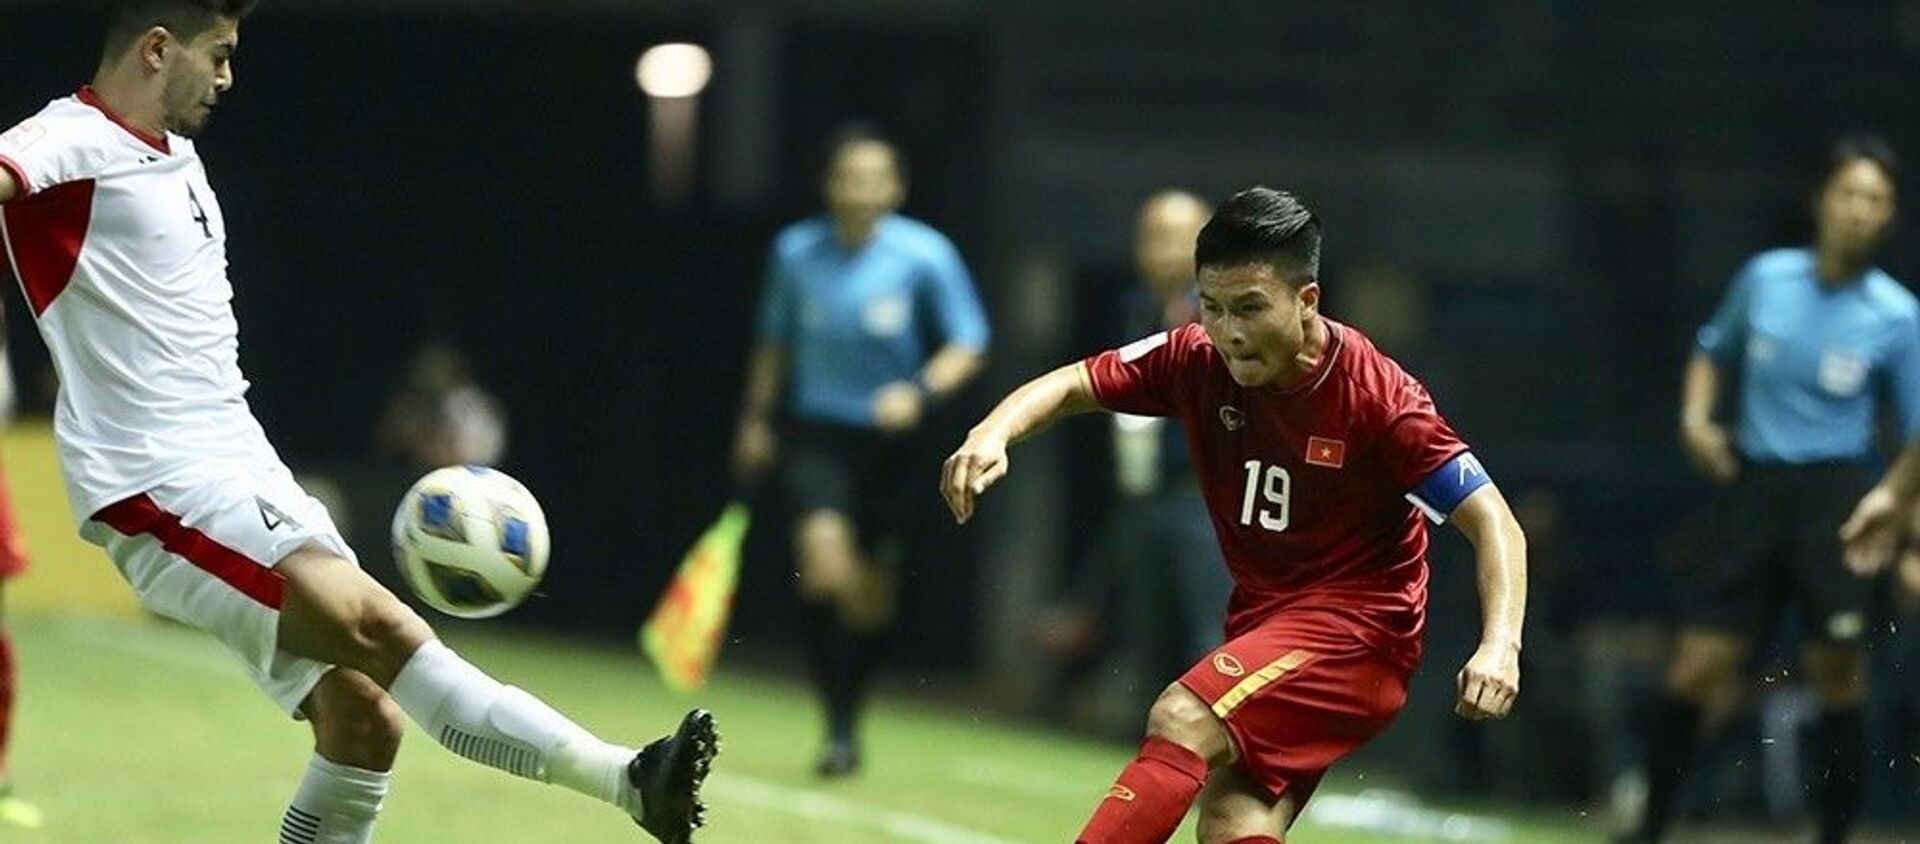 Quang Hải (19-U23 Việt Nam) tạt bóng vào vòng cấm địa U 23 Jordan. - Sputnik Việt Nam, 1920, 09.03.2020